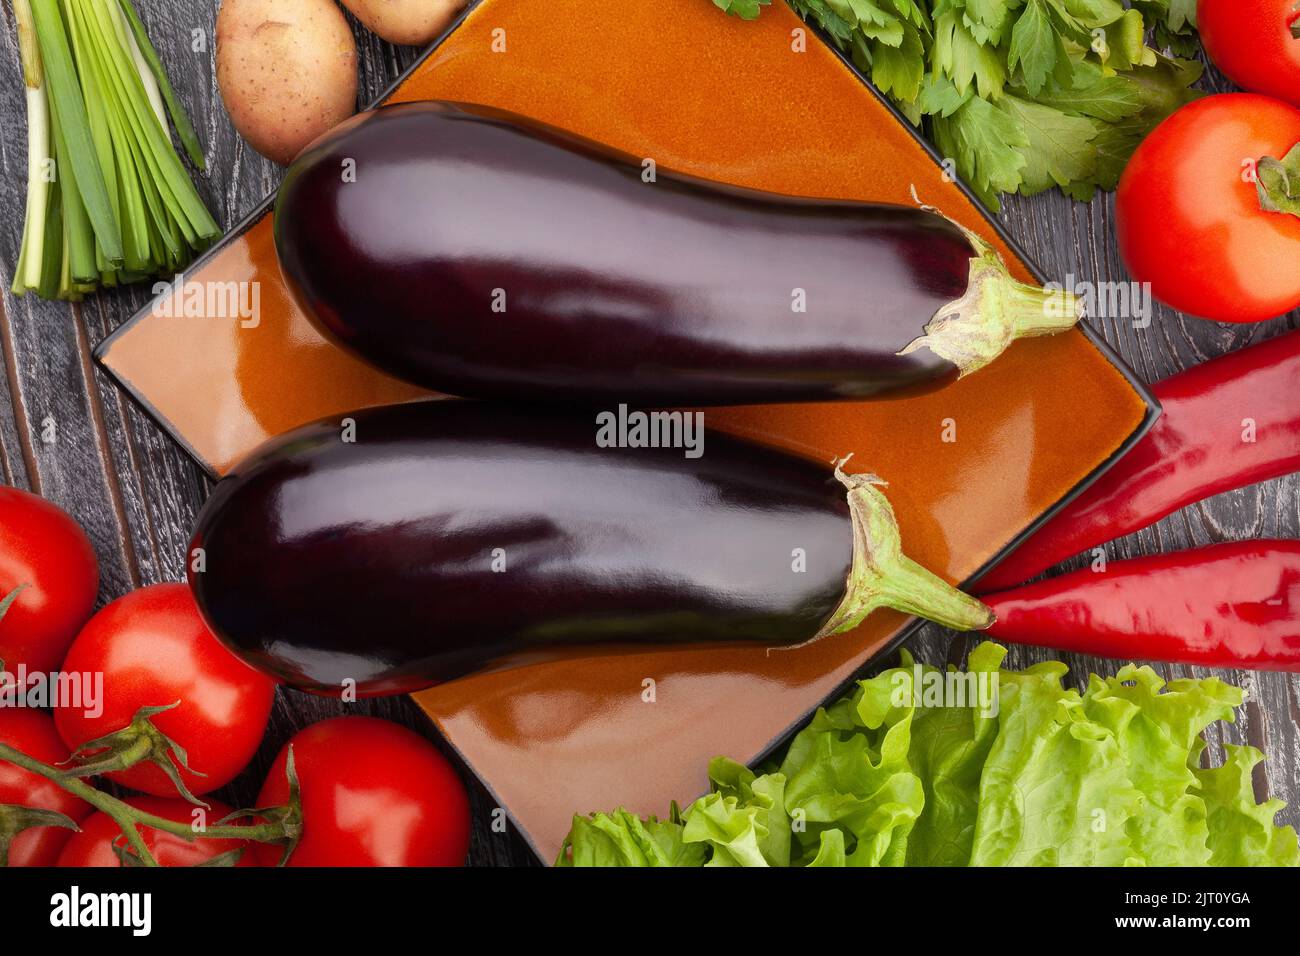 eggplant group on wood background Stock Photo